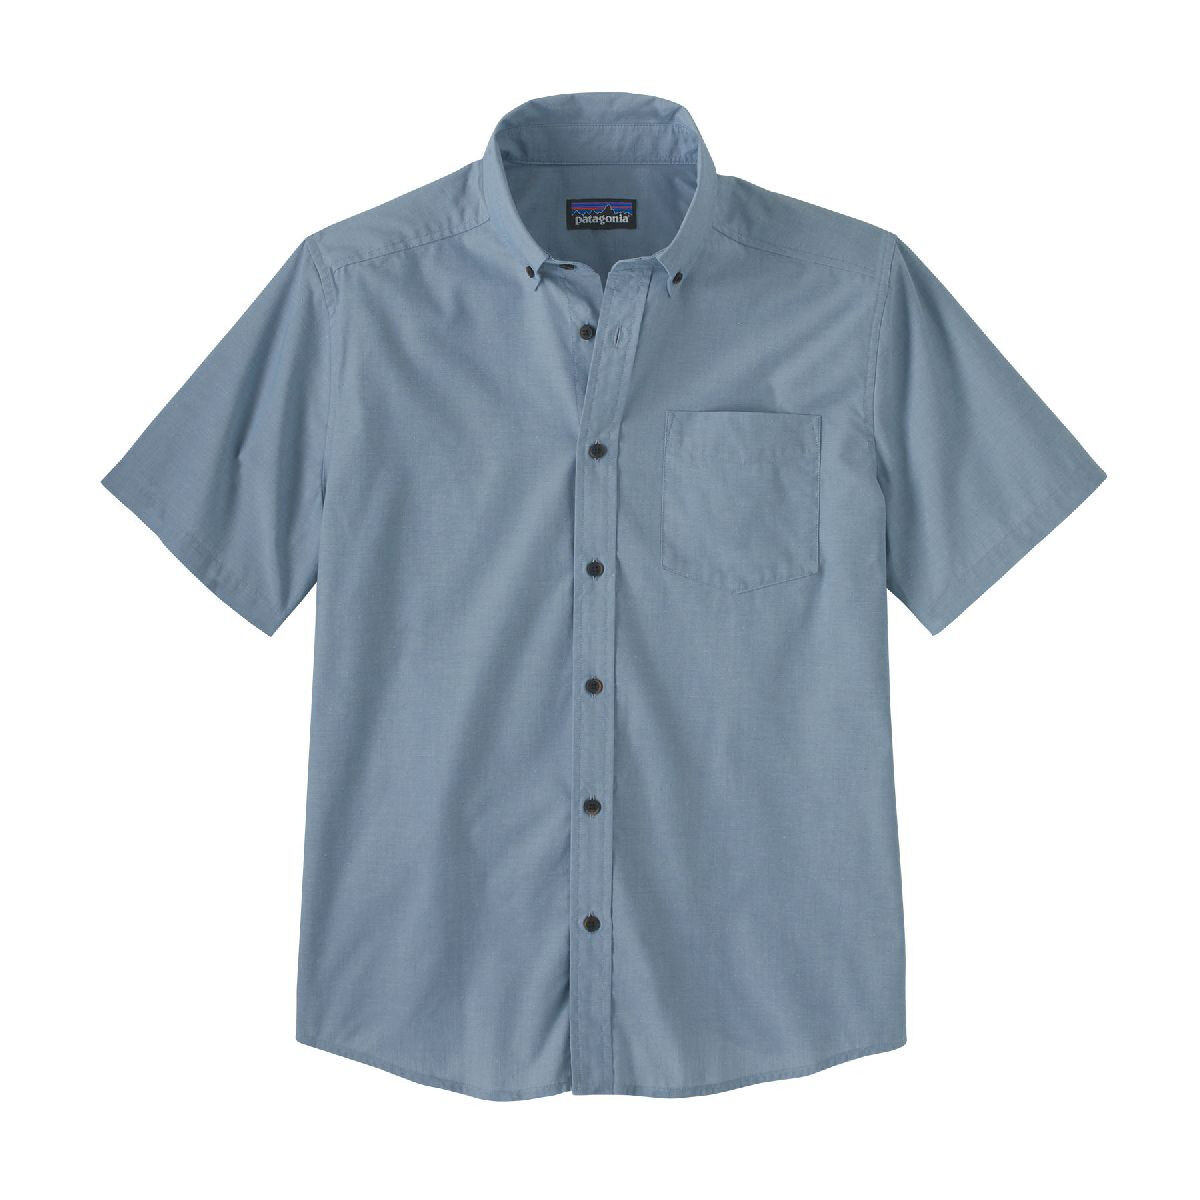 Patagonia Daily Shirt - Camisa - Hombre